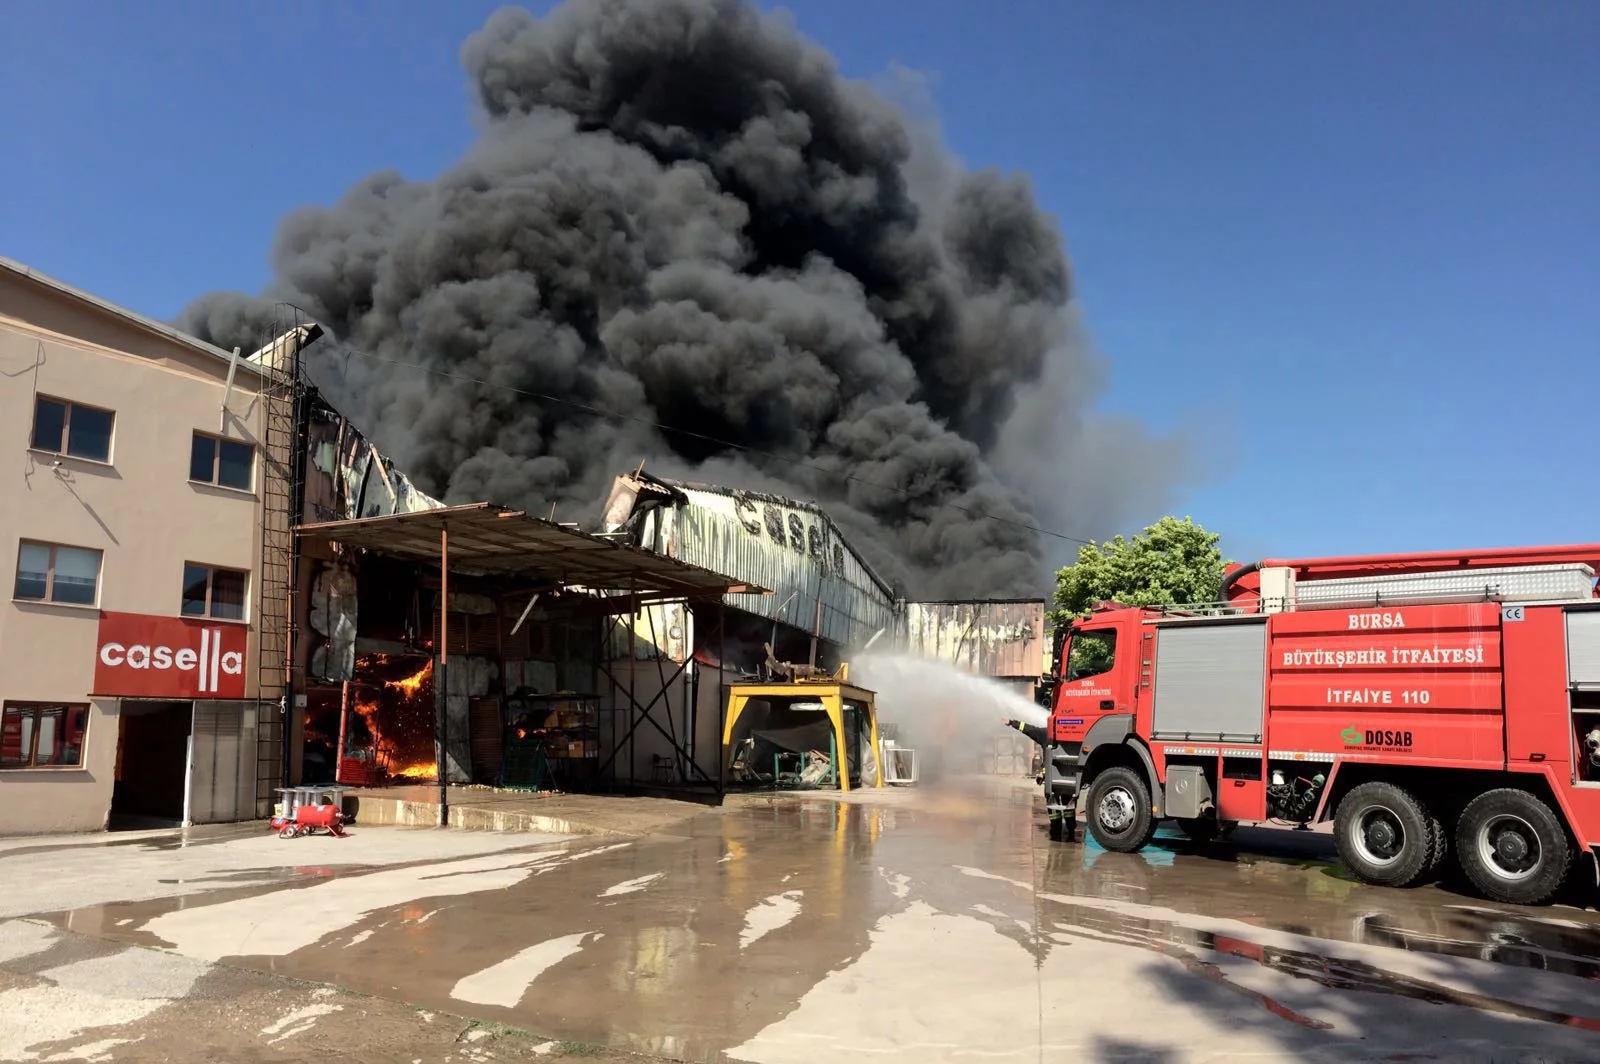 Bursa'daki fabrika yangınında 100 işçi kısa sürede tahliye edildi